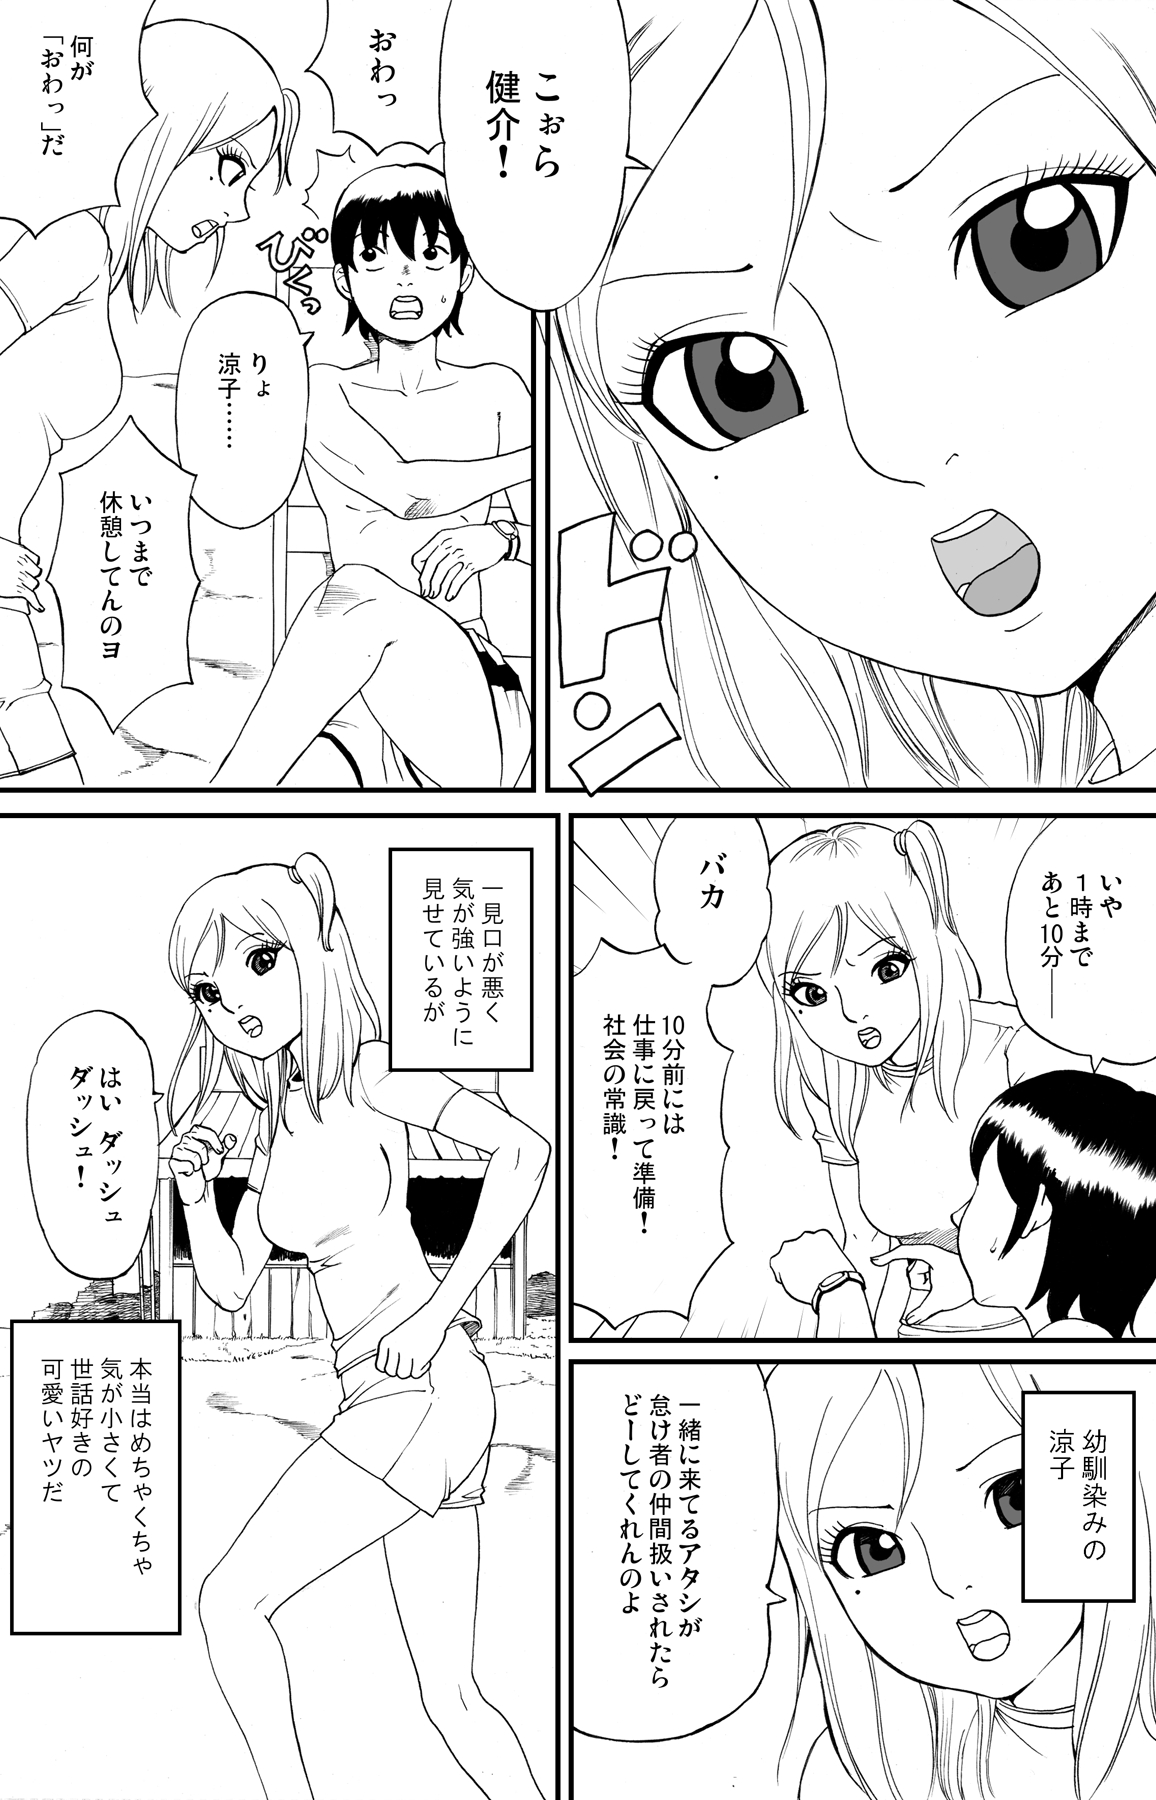 [nekomajin] fuwapoyo page 5 full